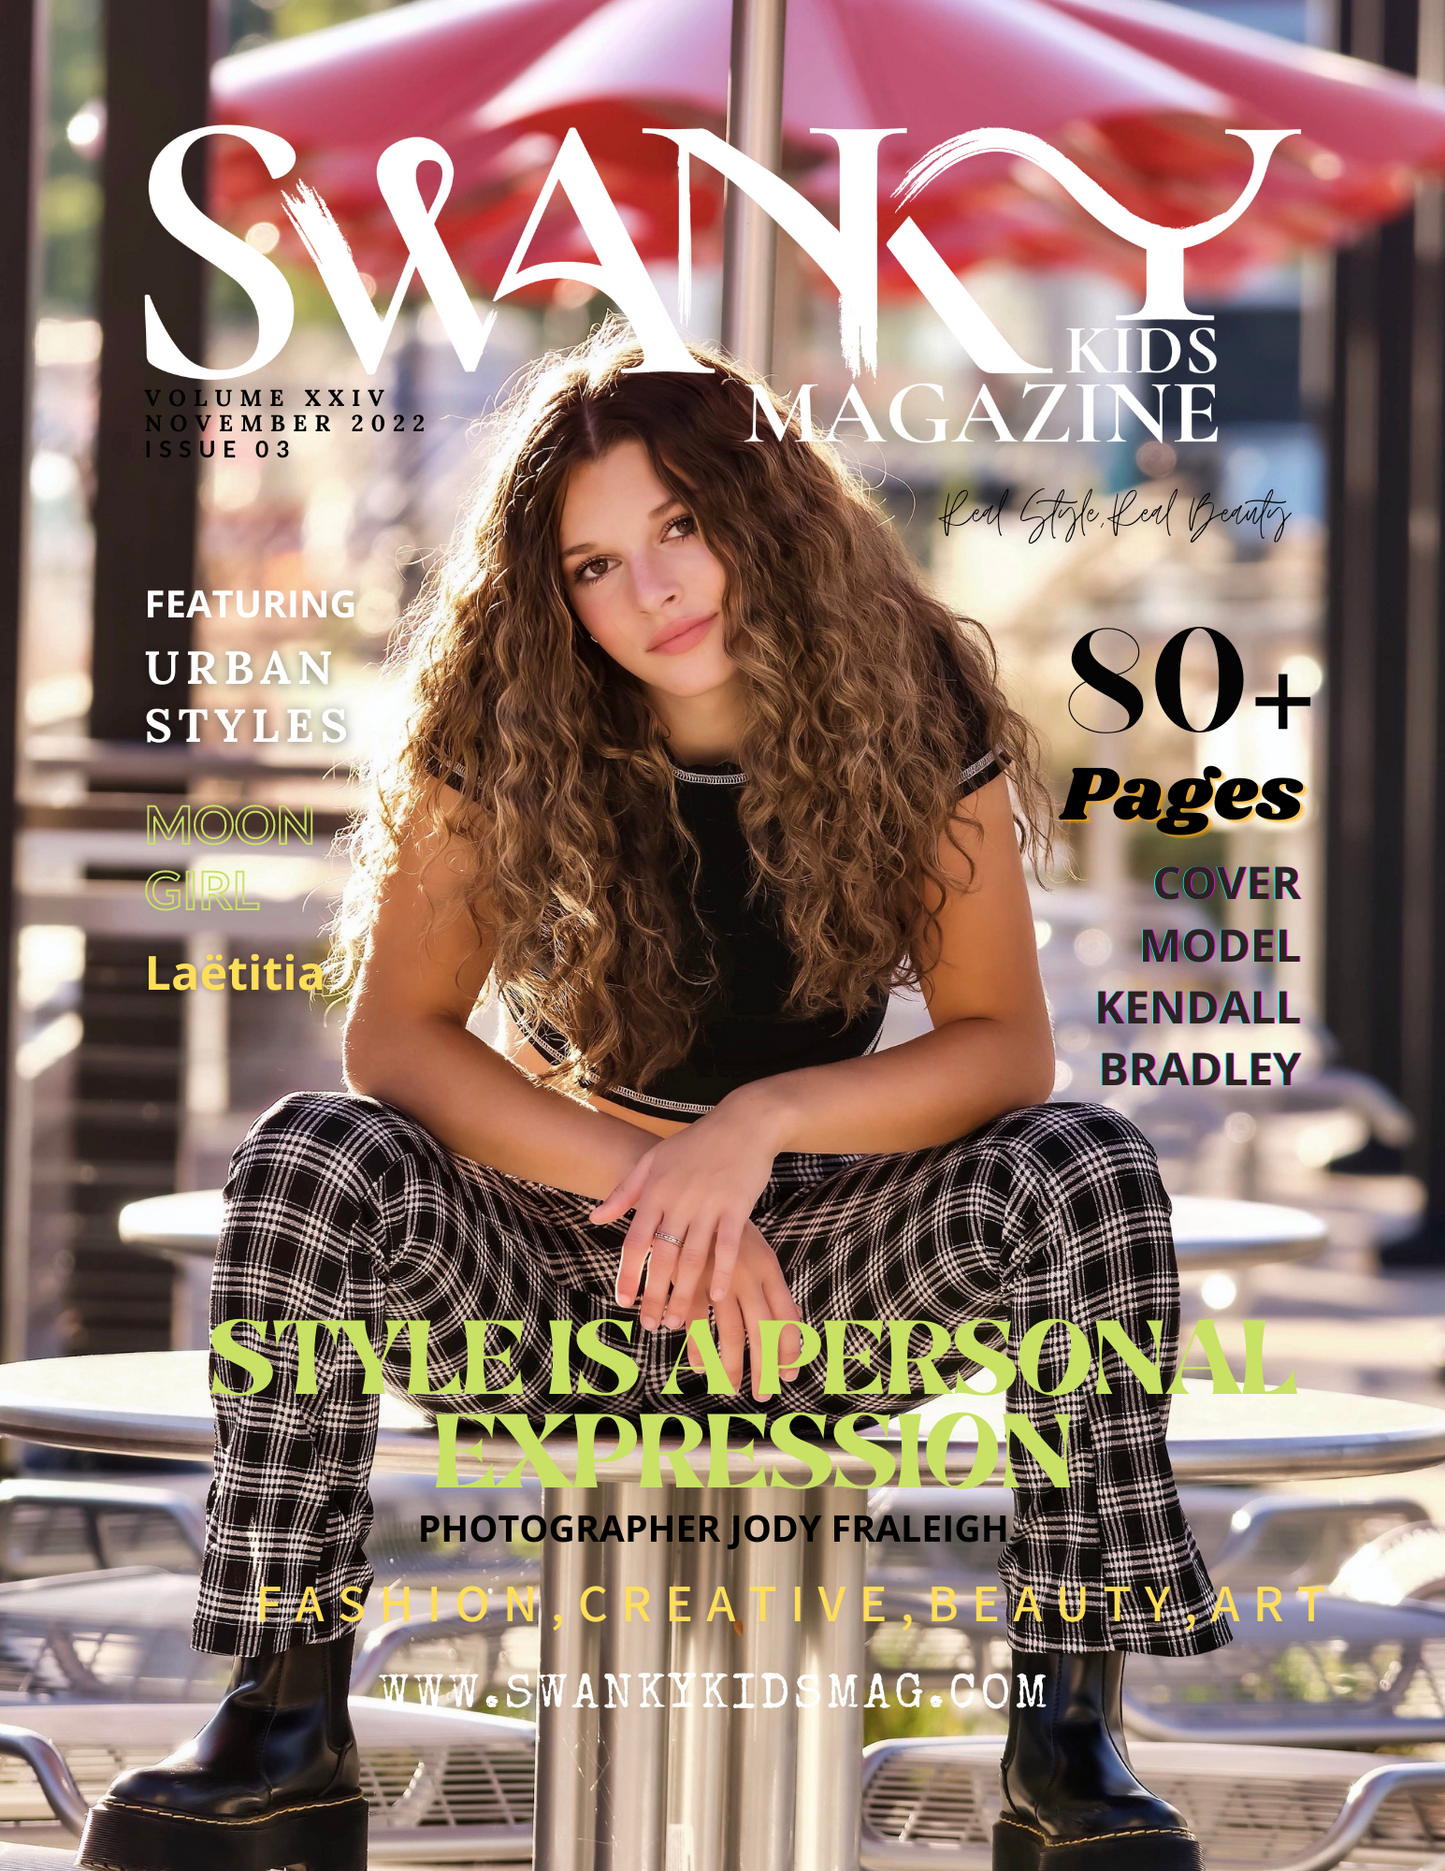 Swanky Kids Magazine November 2022 VOL XXIV Issue 03